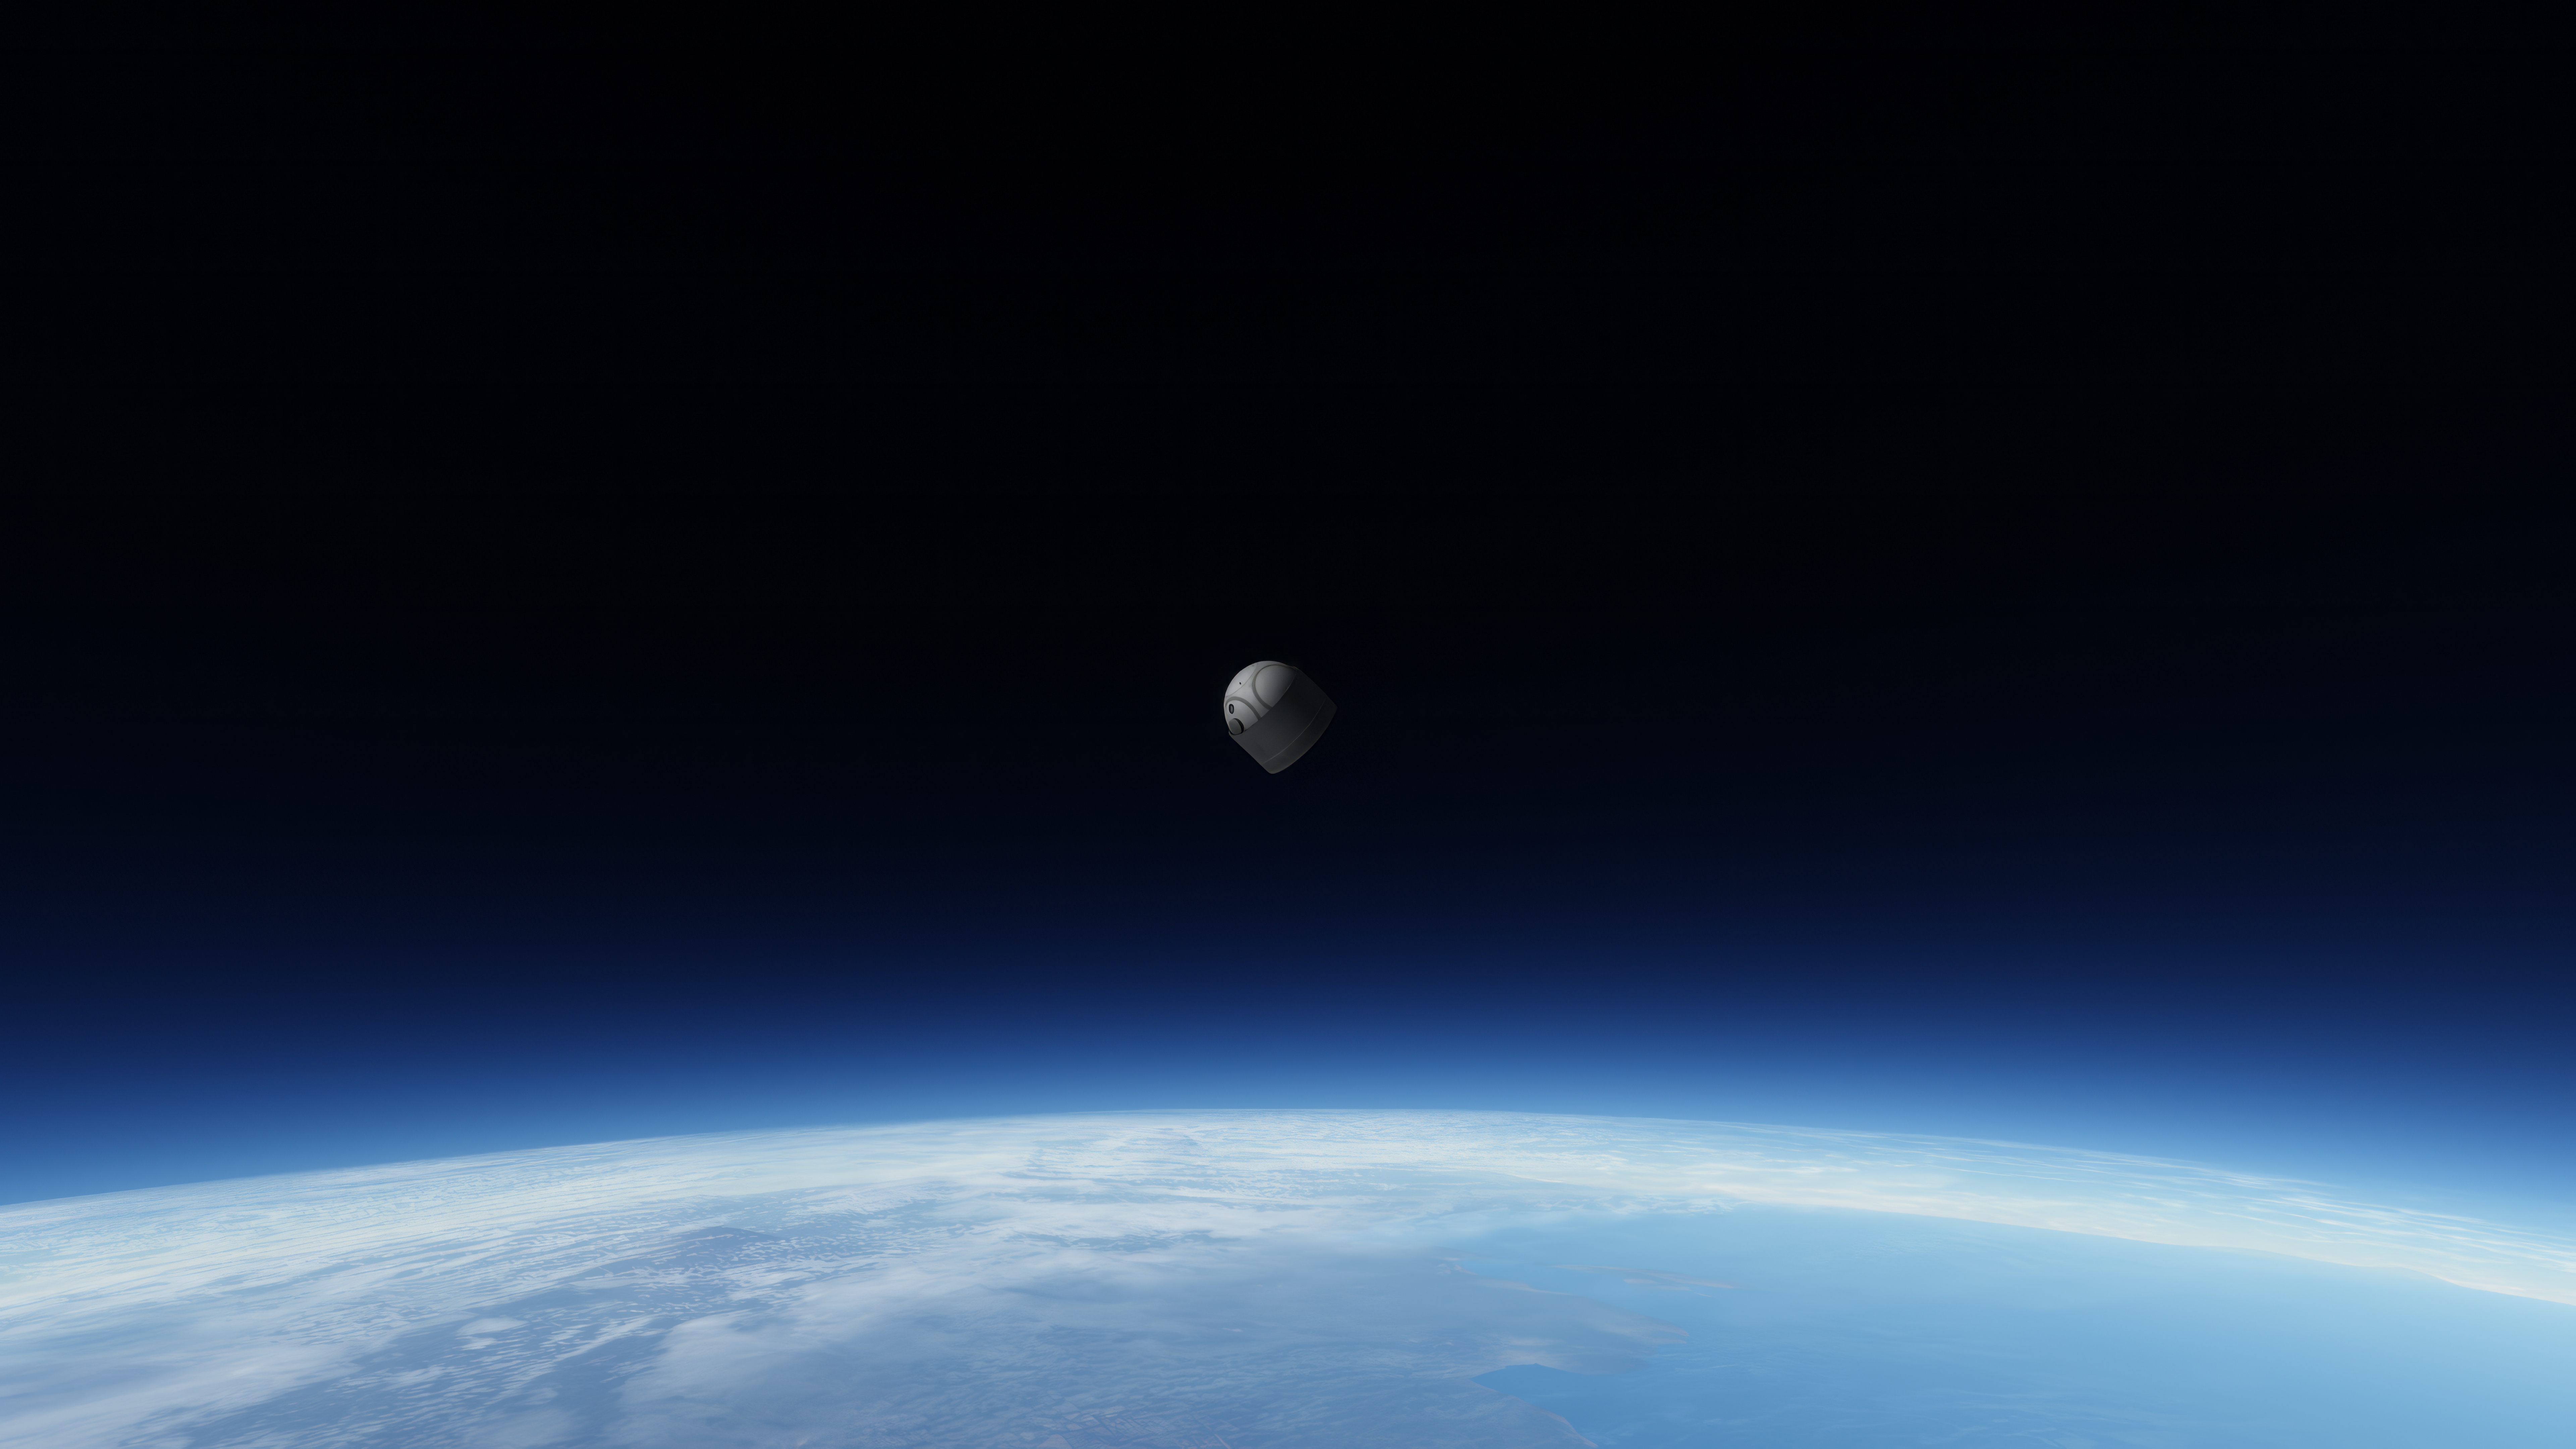 General 7680x4320 Kerbal Space Program space simple background planet minimalism